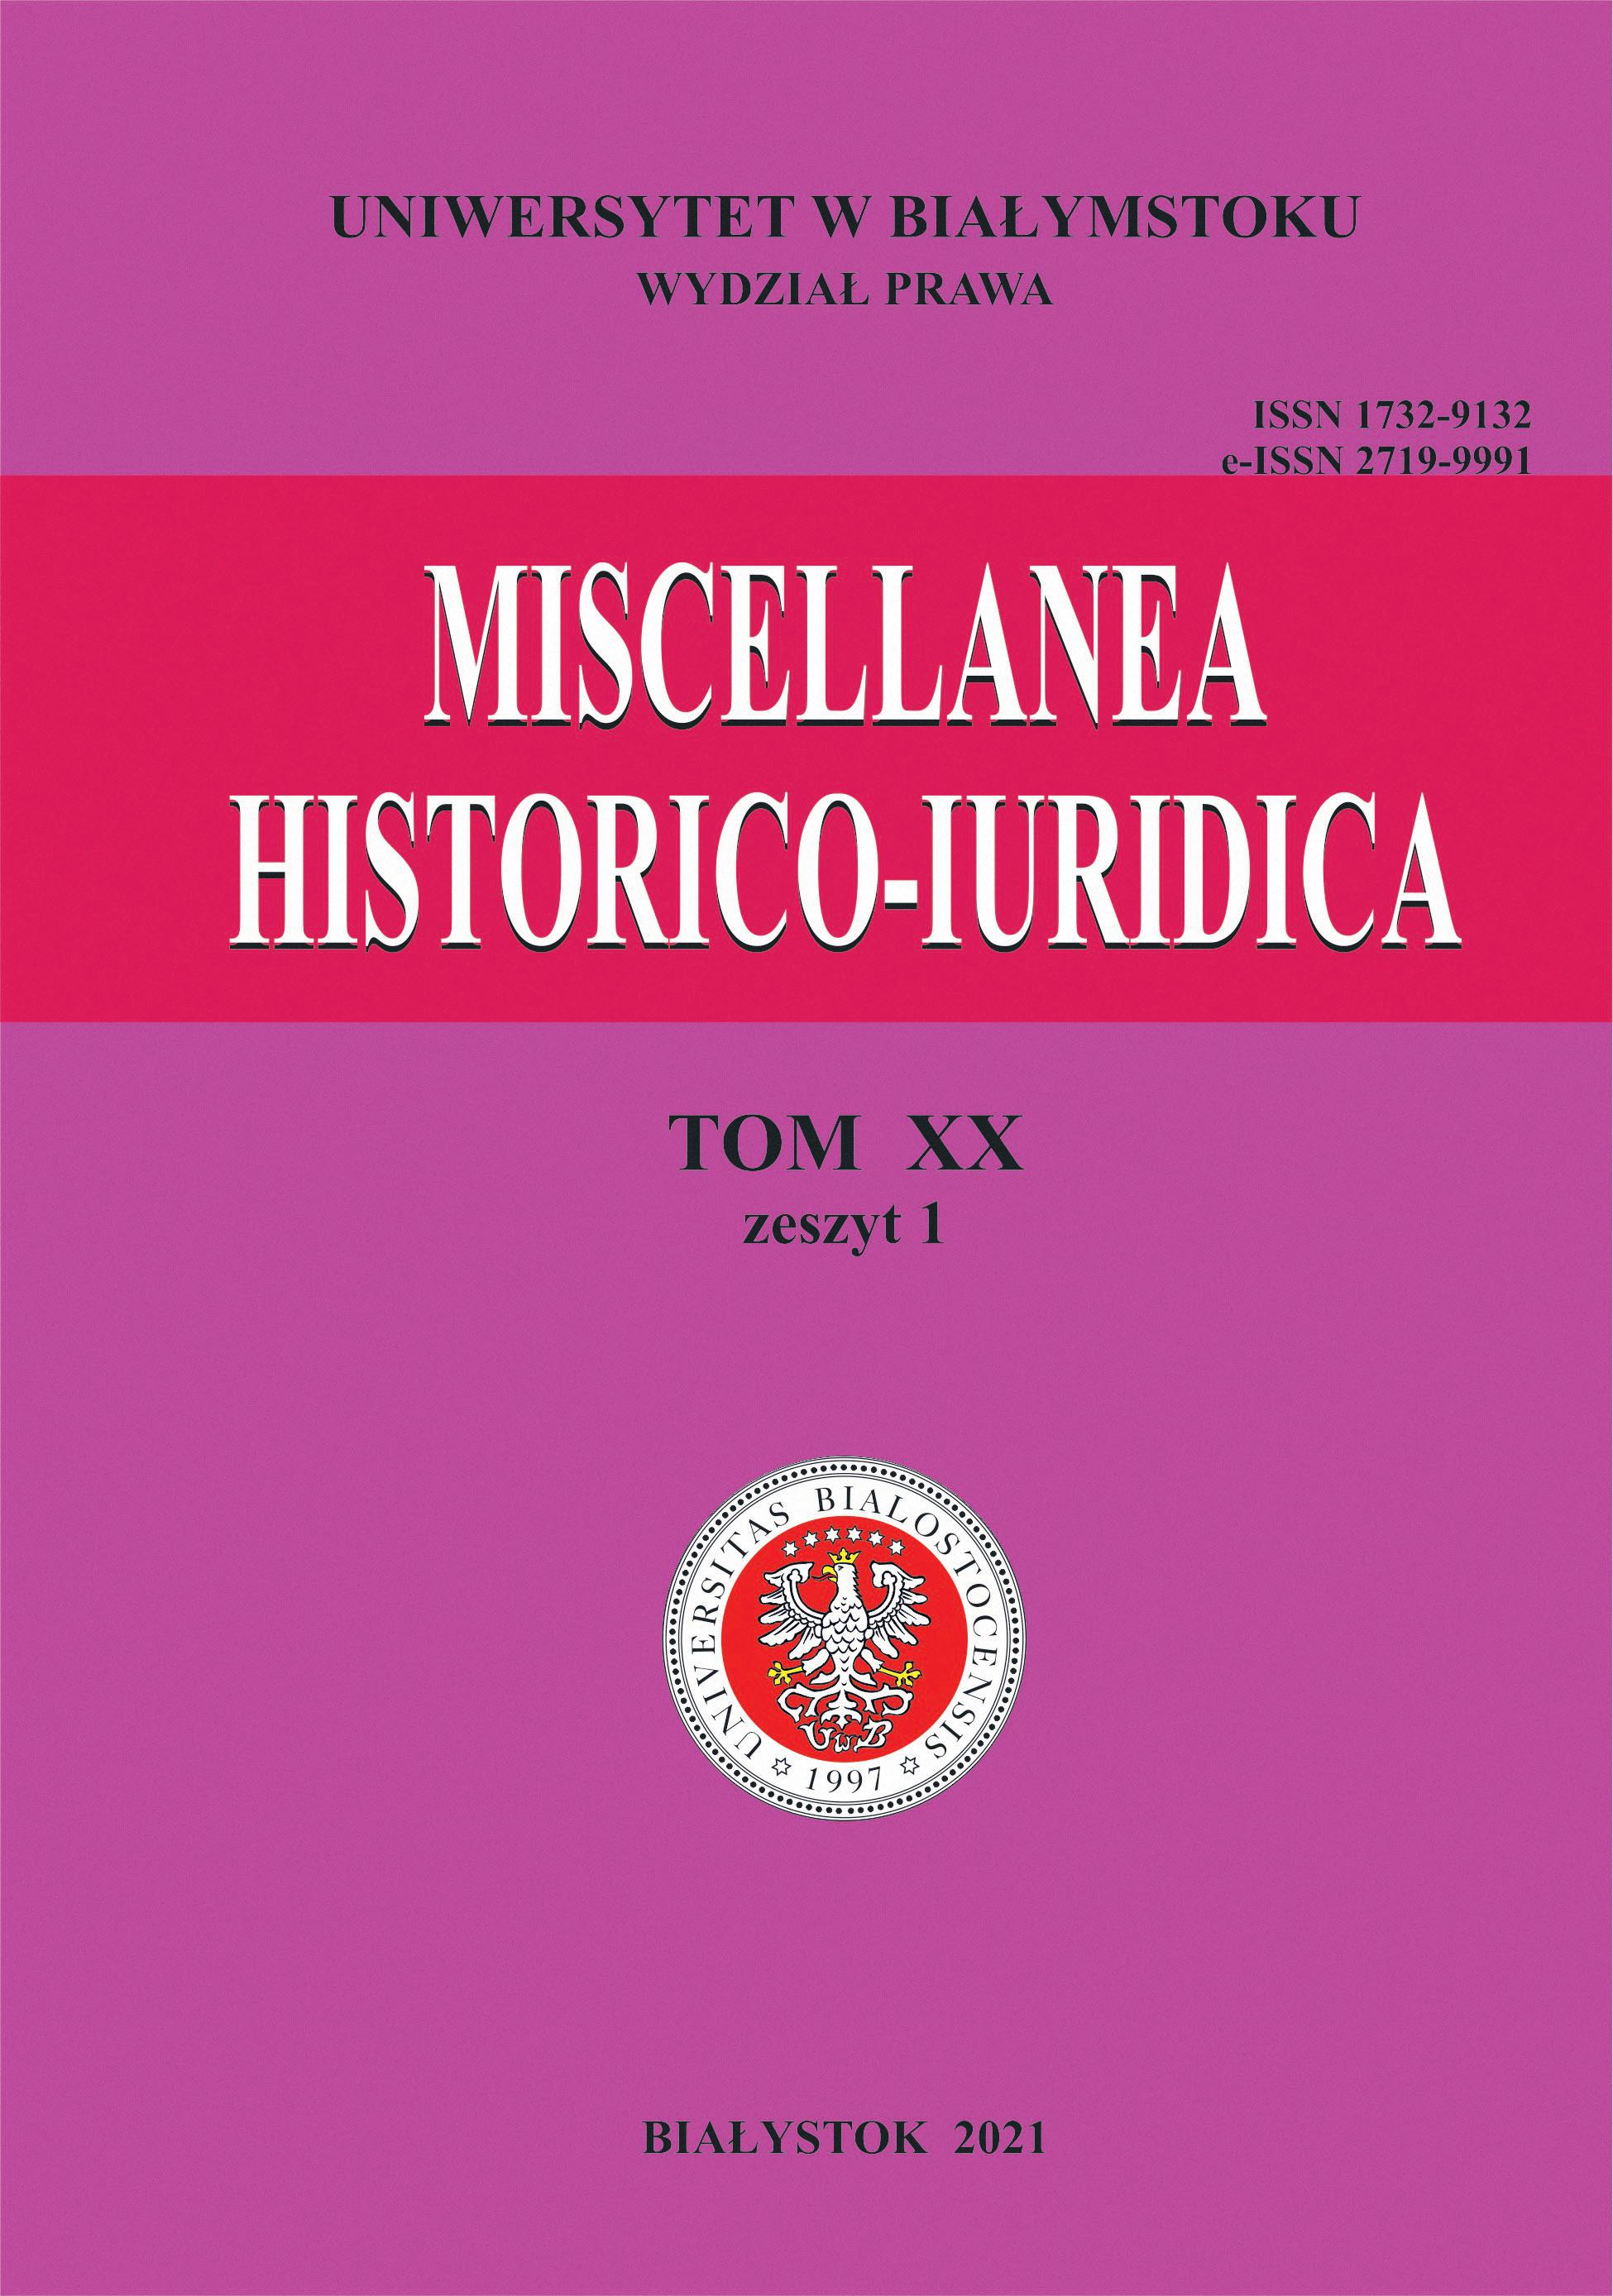 					View Vol. 20 No. 1 (2021): Miscellanea Historico-Iuridica Vol. XX No. 1
				